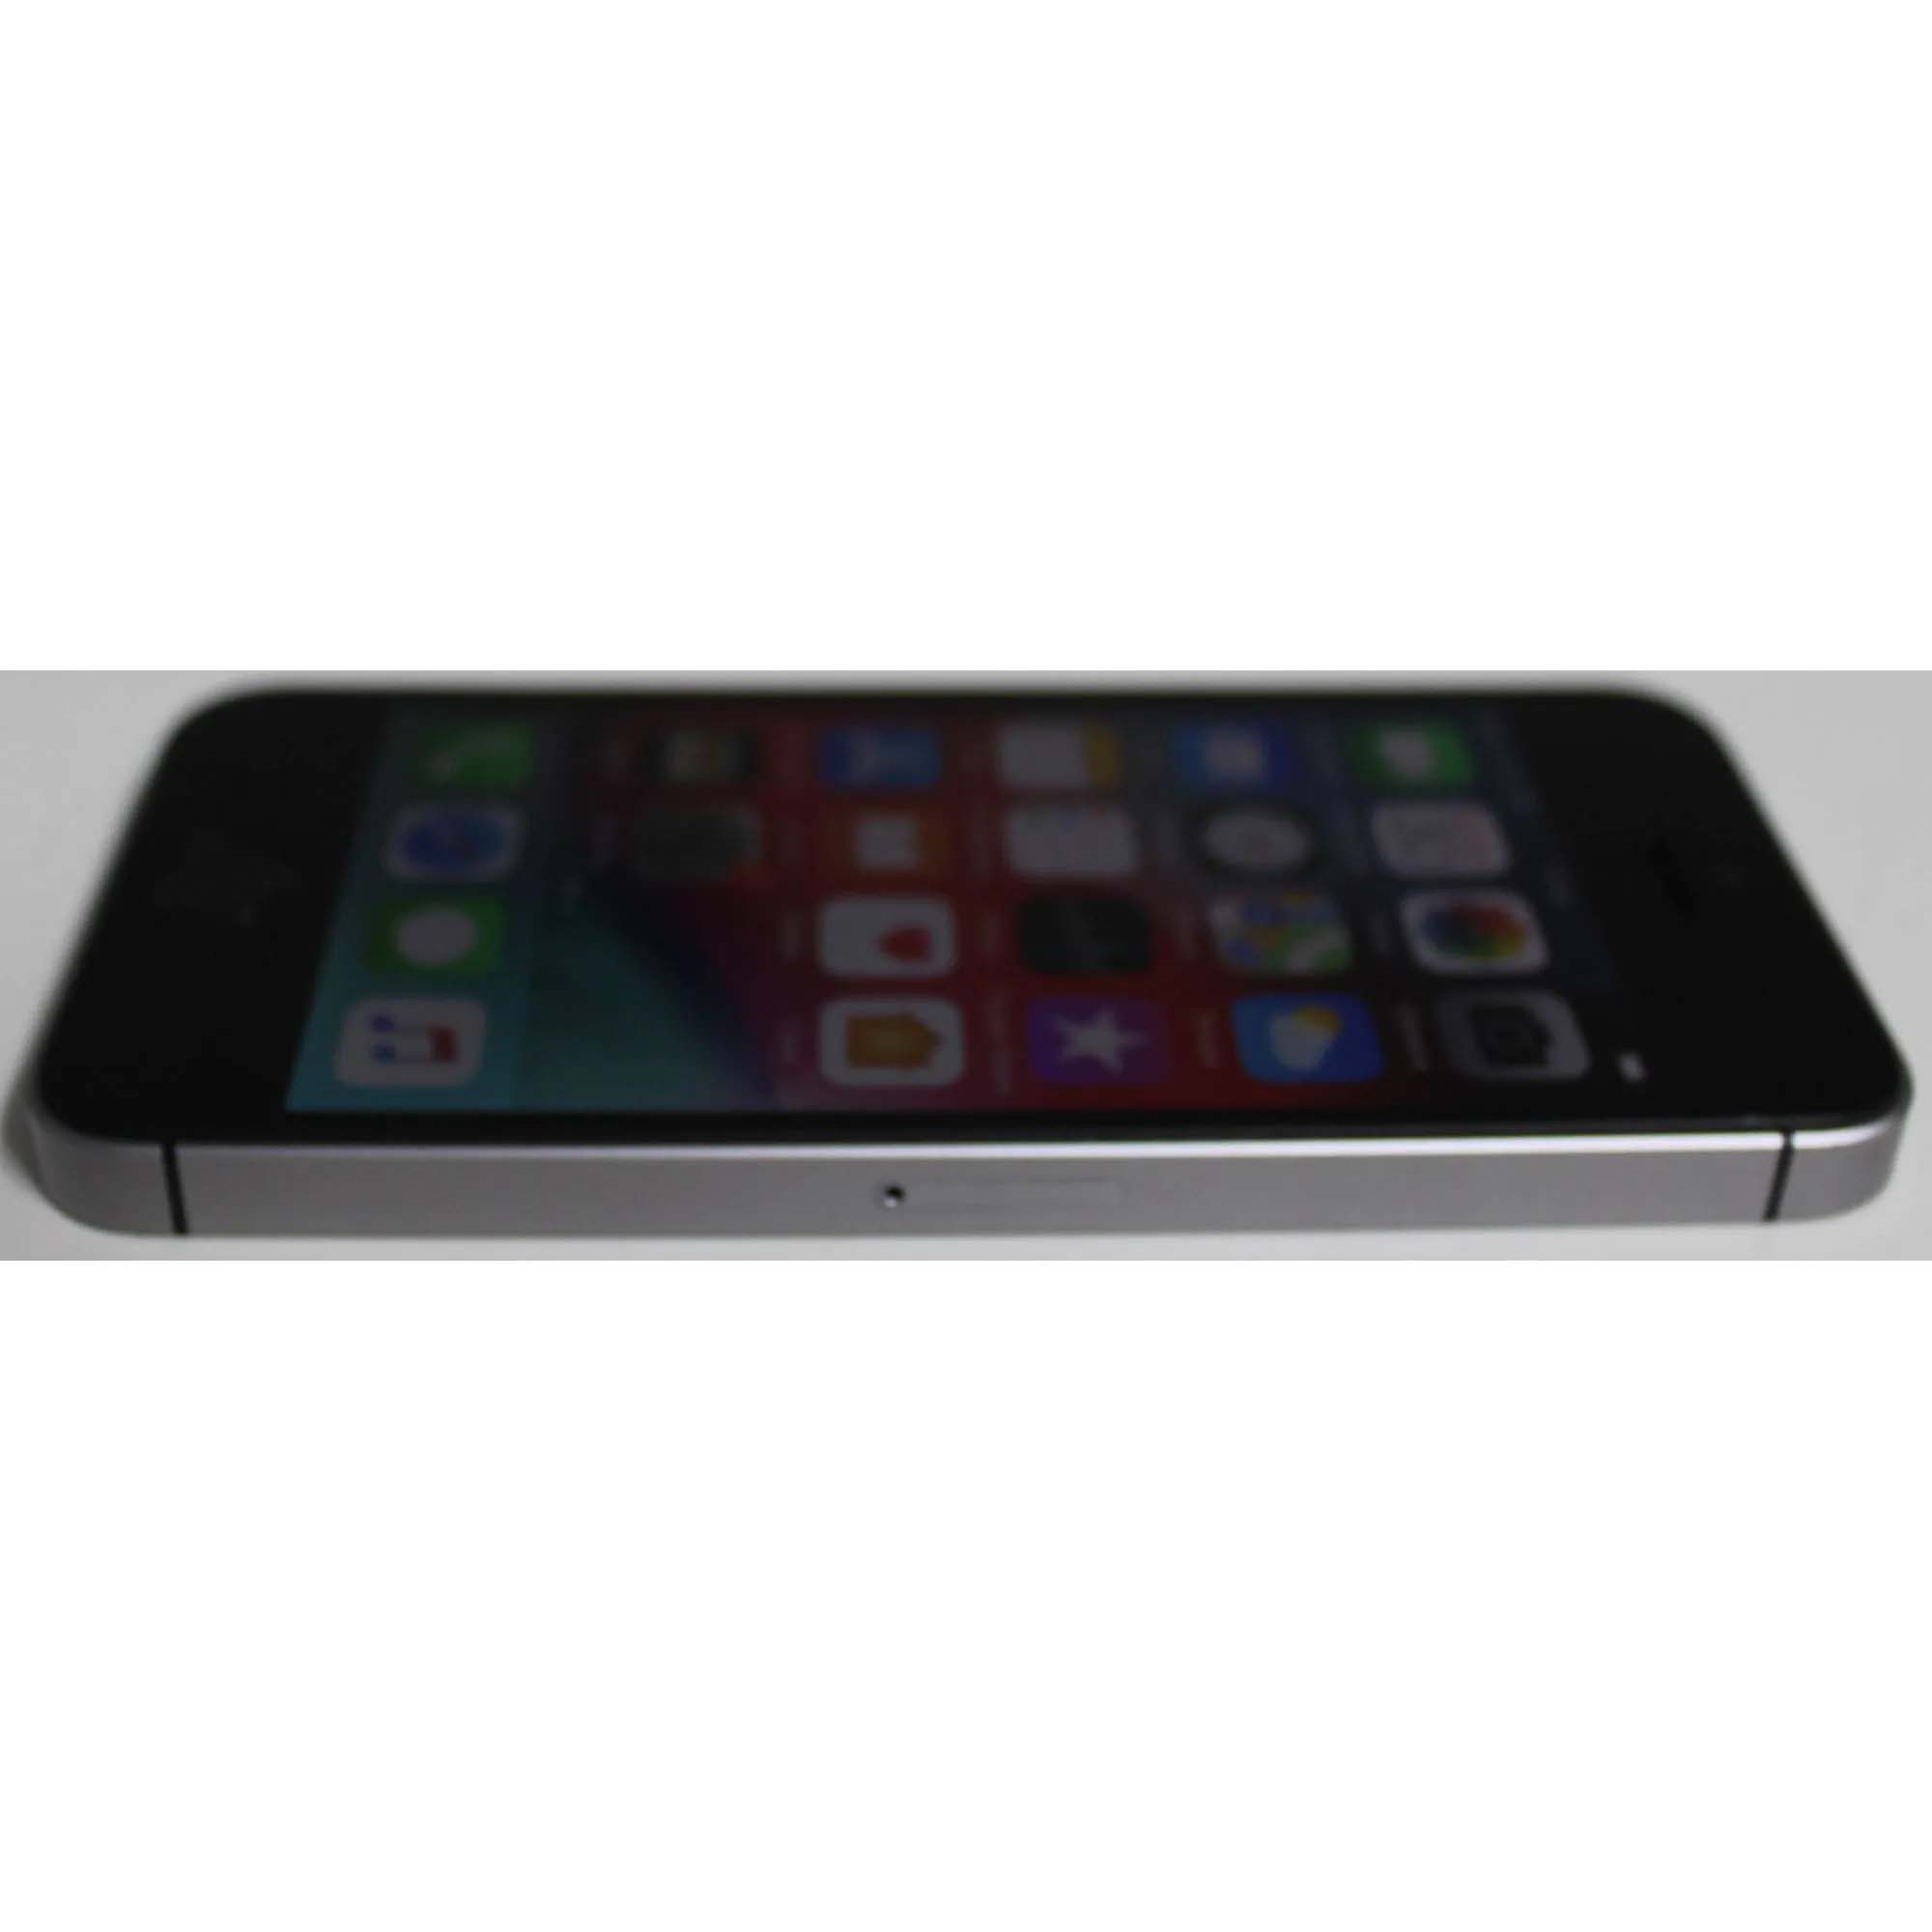 iPhone SE MLM62BZ/A 4" 64GB - Cinza espacial